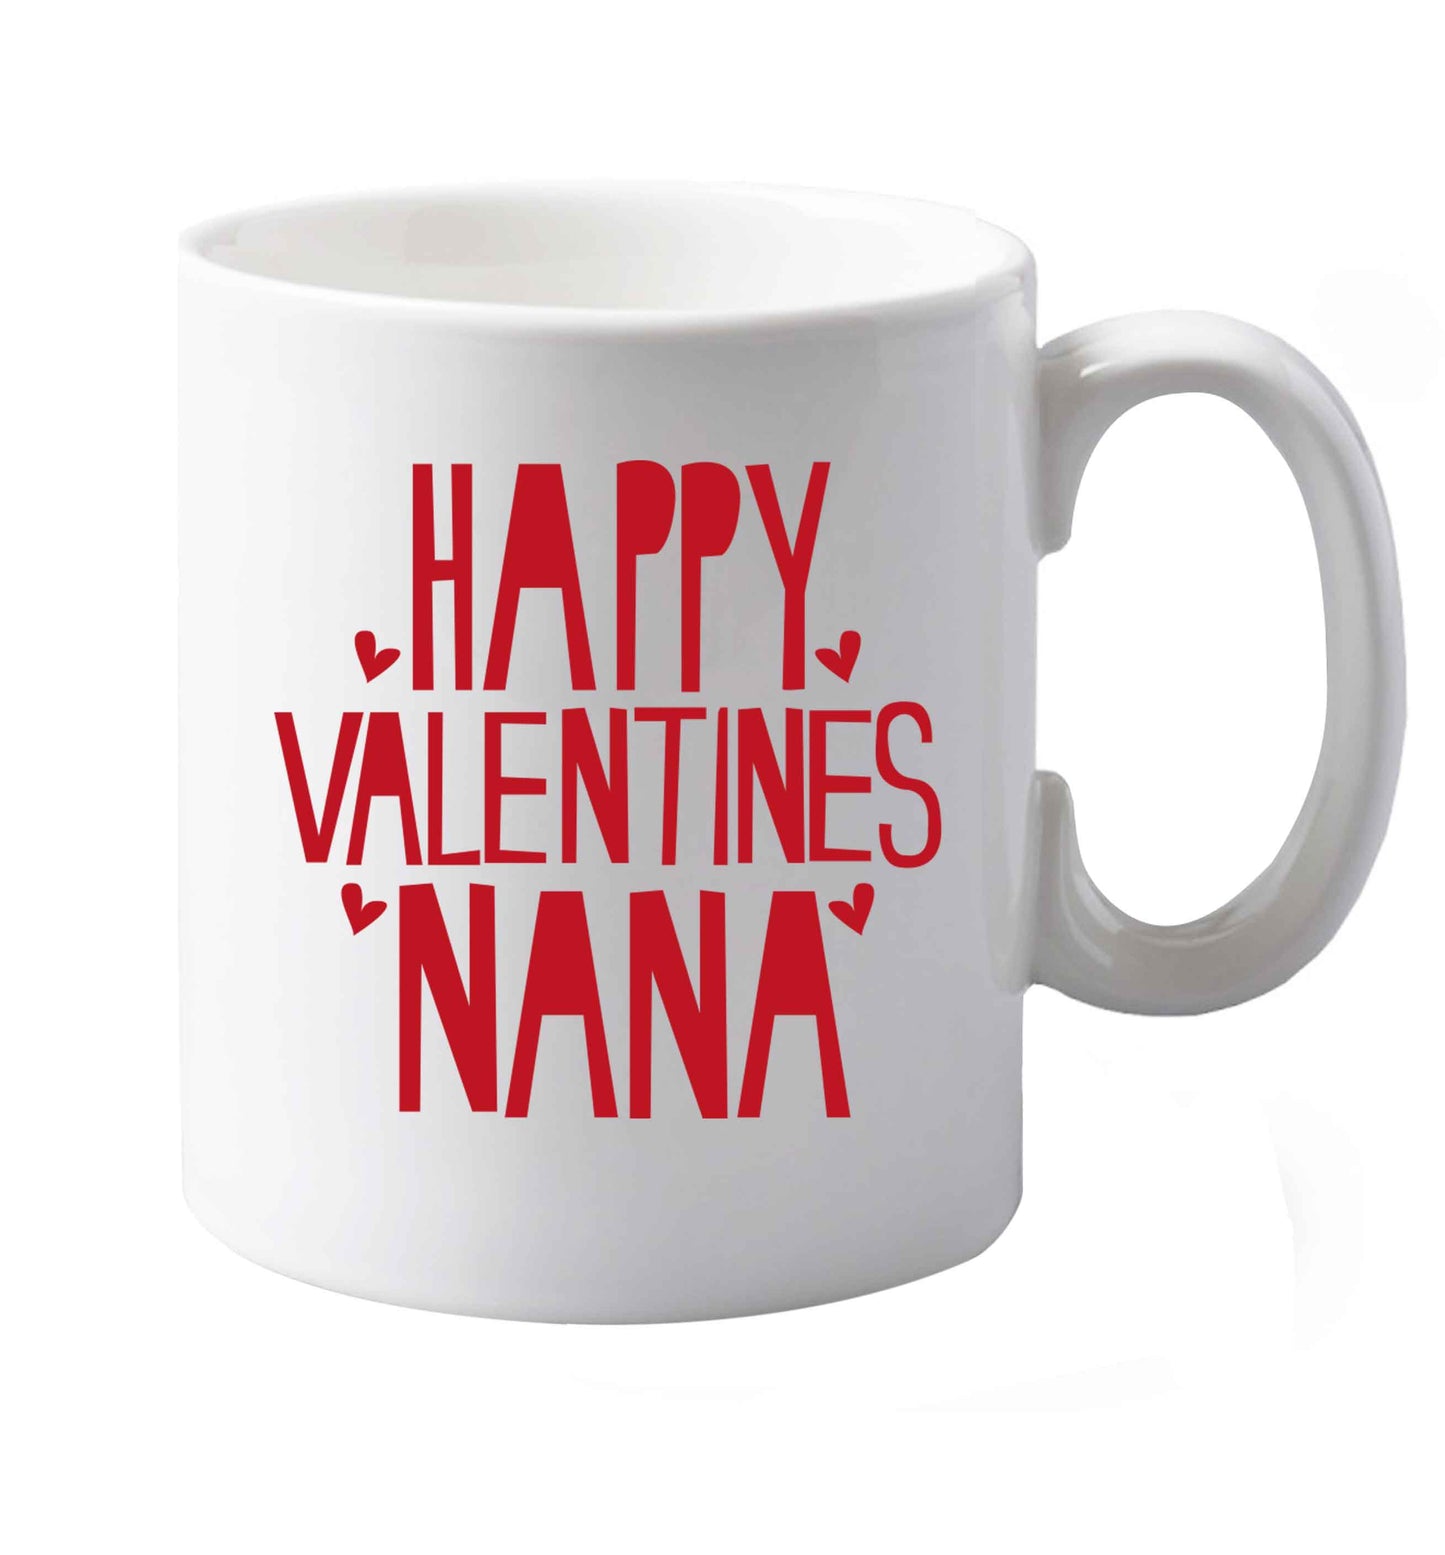 10 oz Happy valentines nana ceramic mug both sides